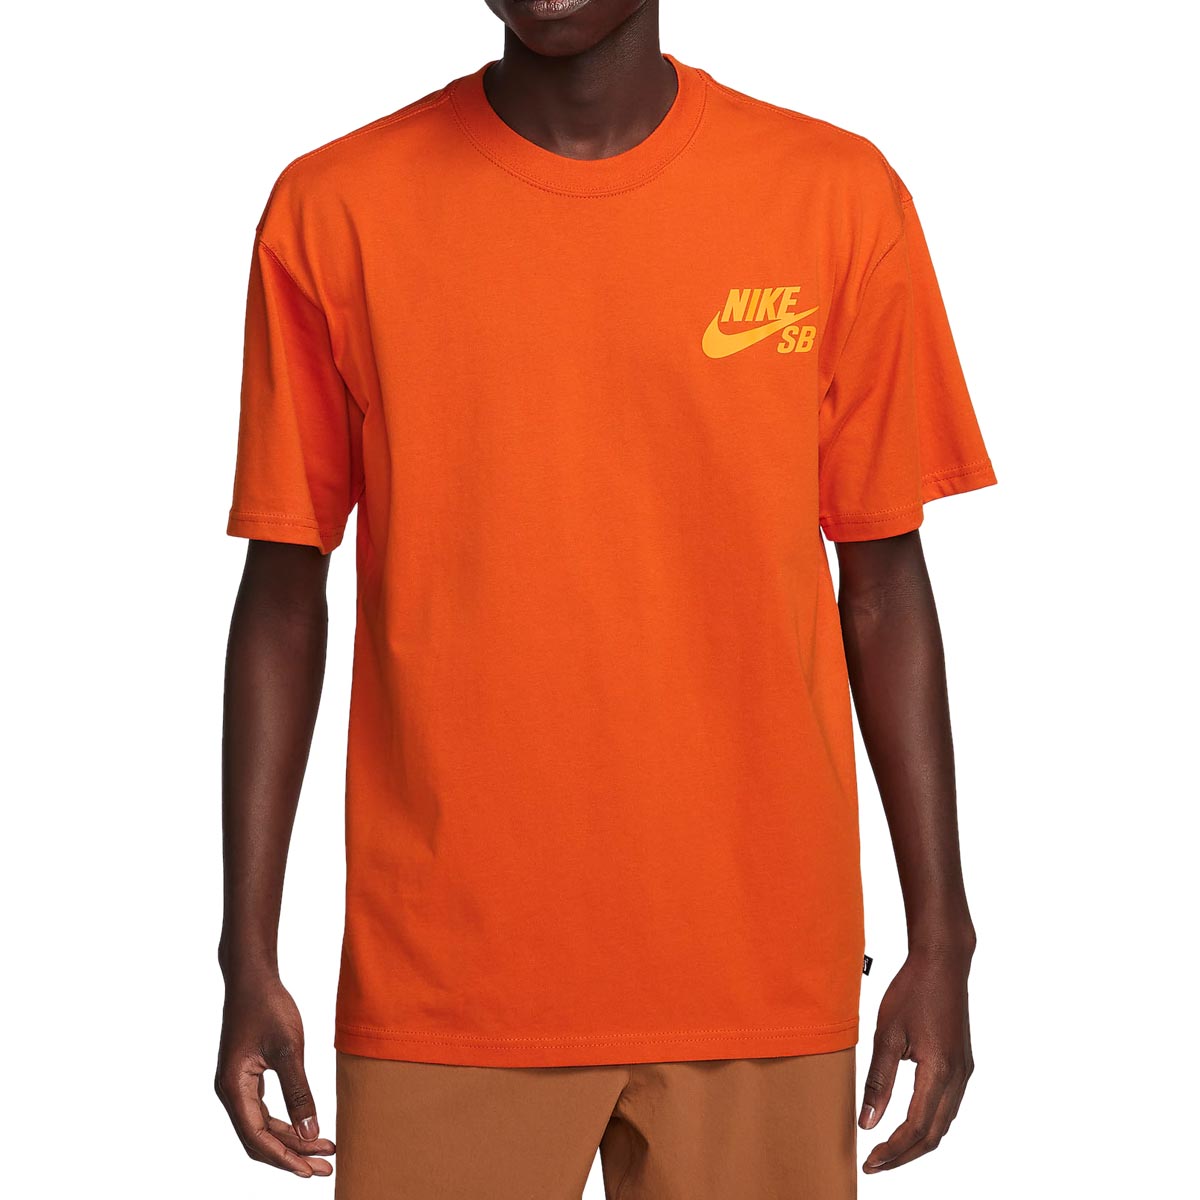 Nike SB New Logo T-Shirt - Campfire Orange image 2